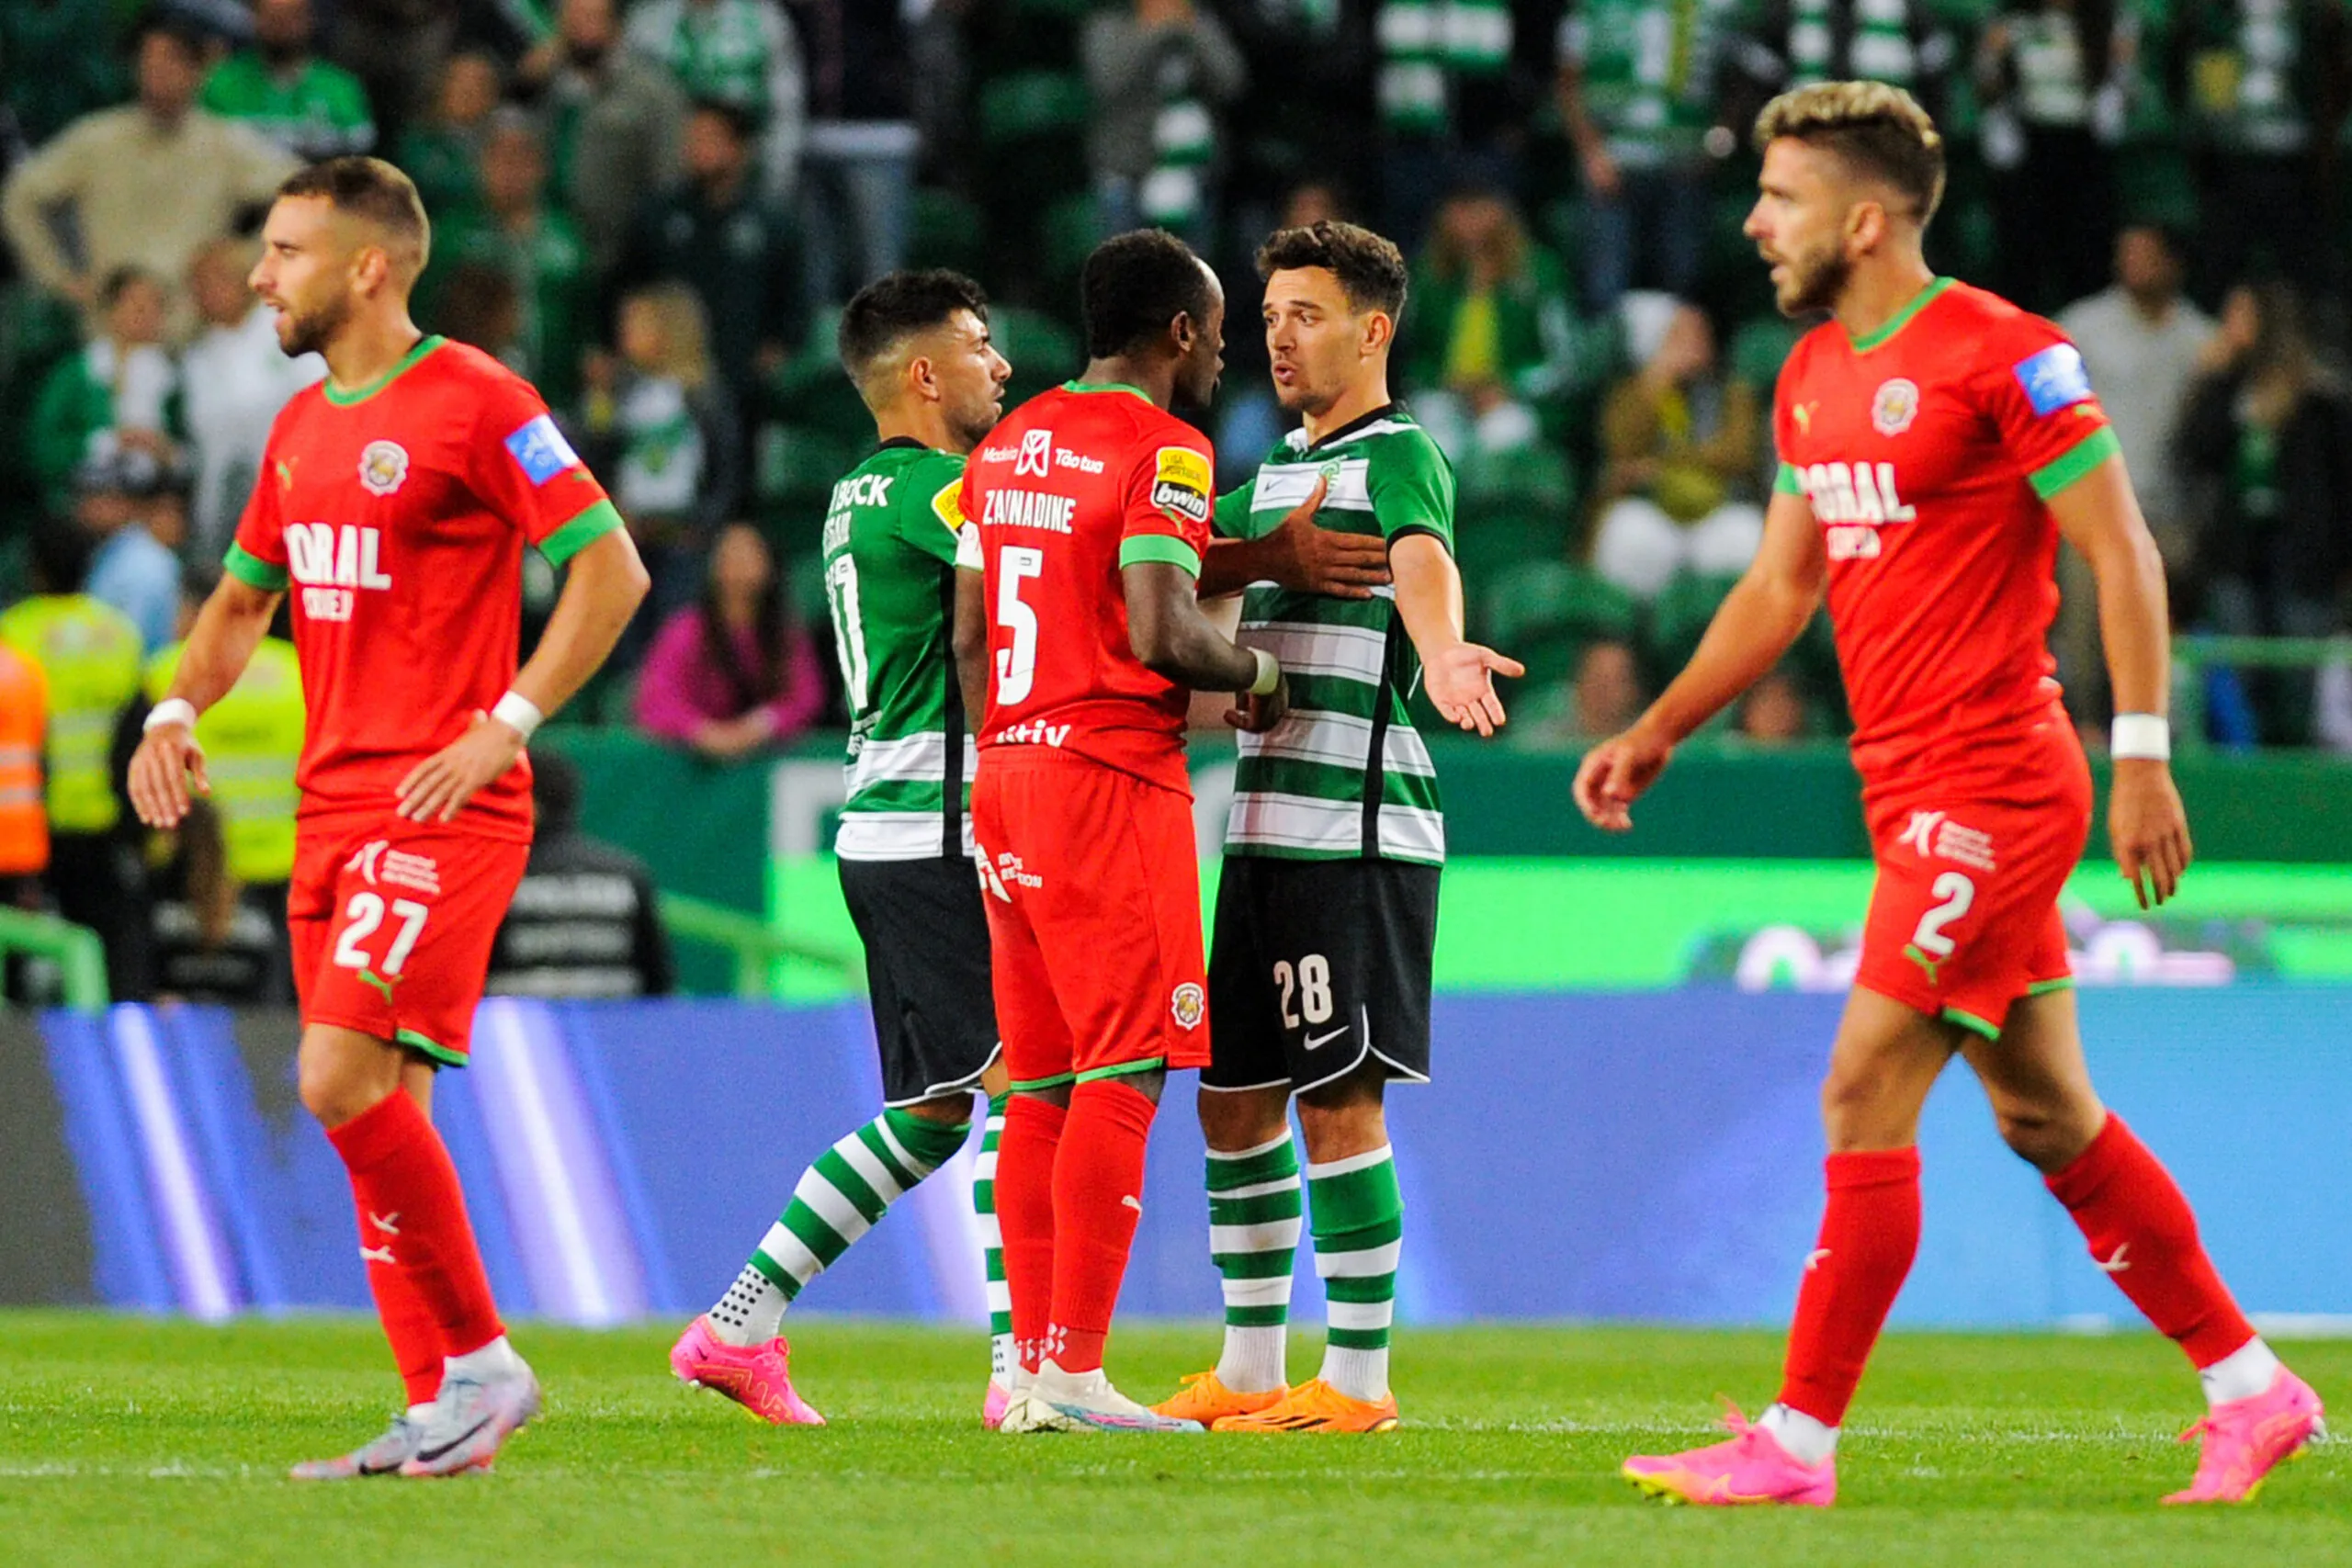 Fin de match rocambolesque entre le Sporting CP et Marítimo